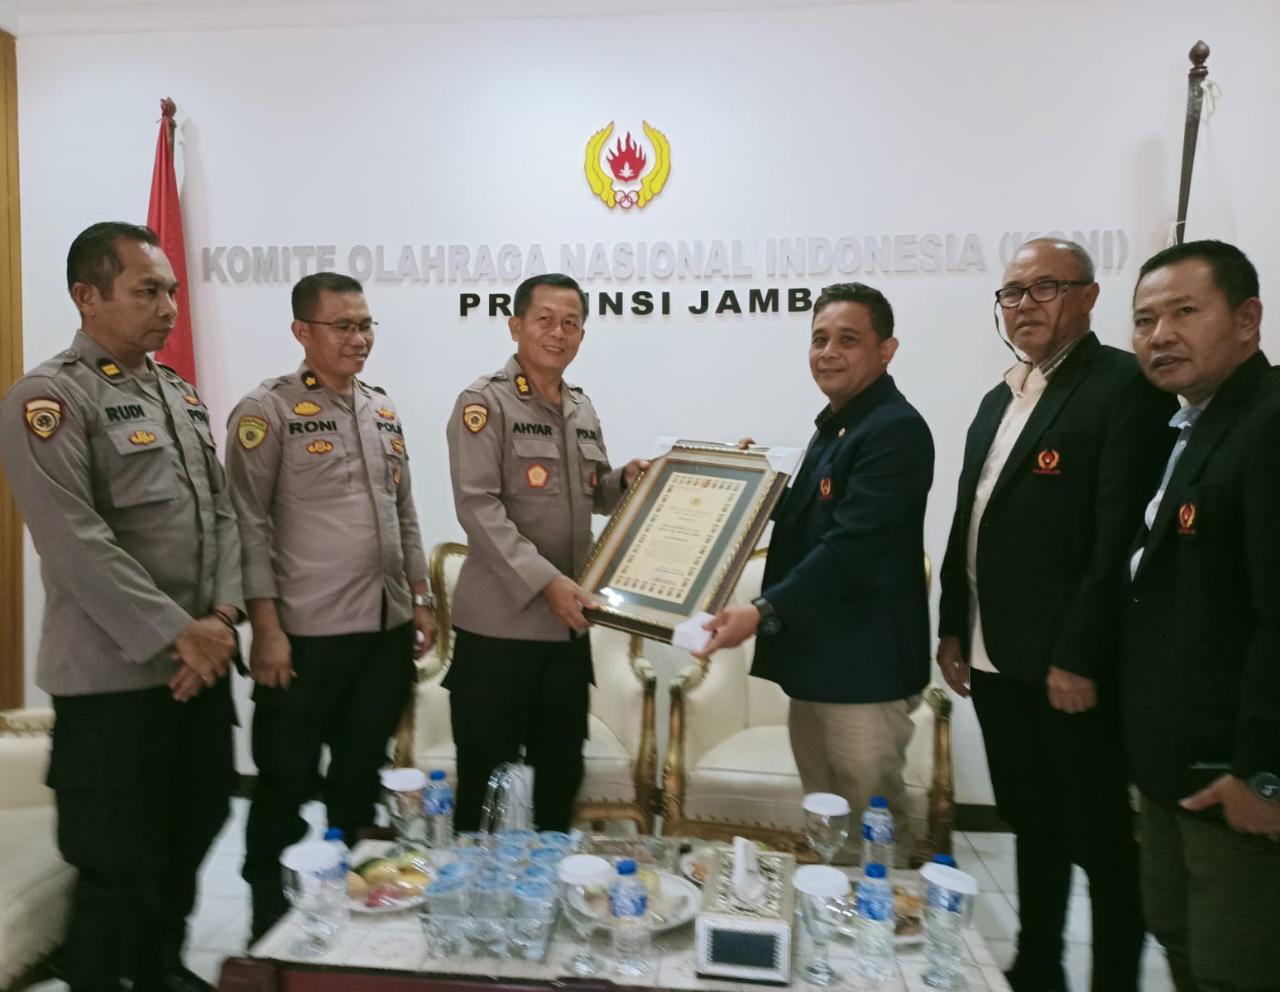 Ketum KONI Provinsi Jambi Budi Setiawan Terima Penghargaan dari Polda Jambi